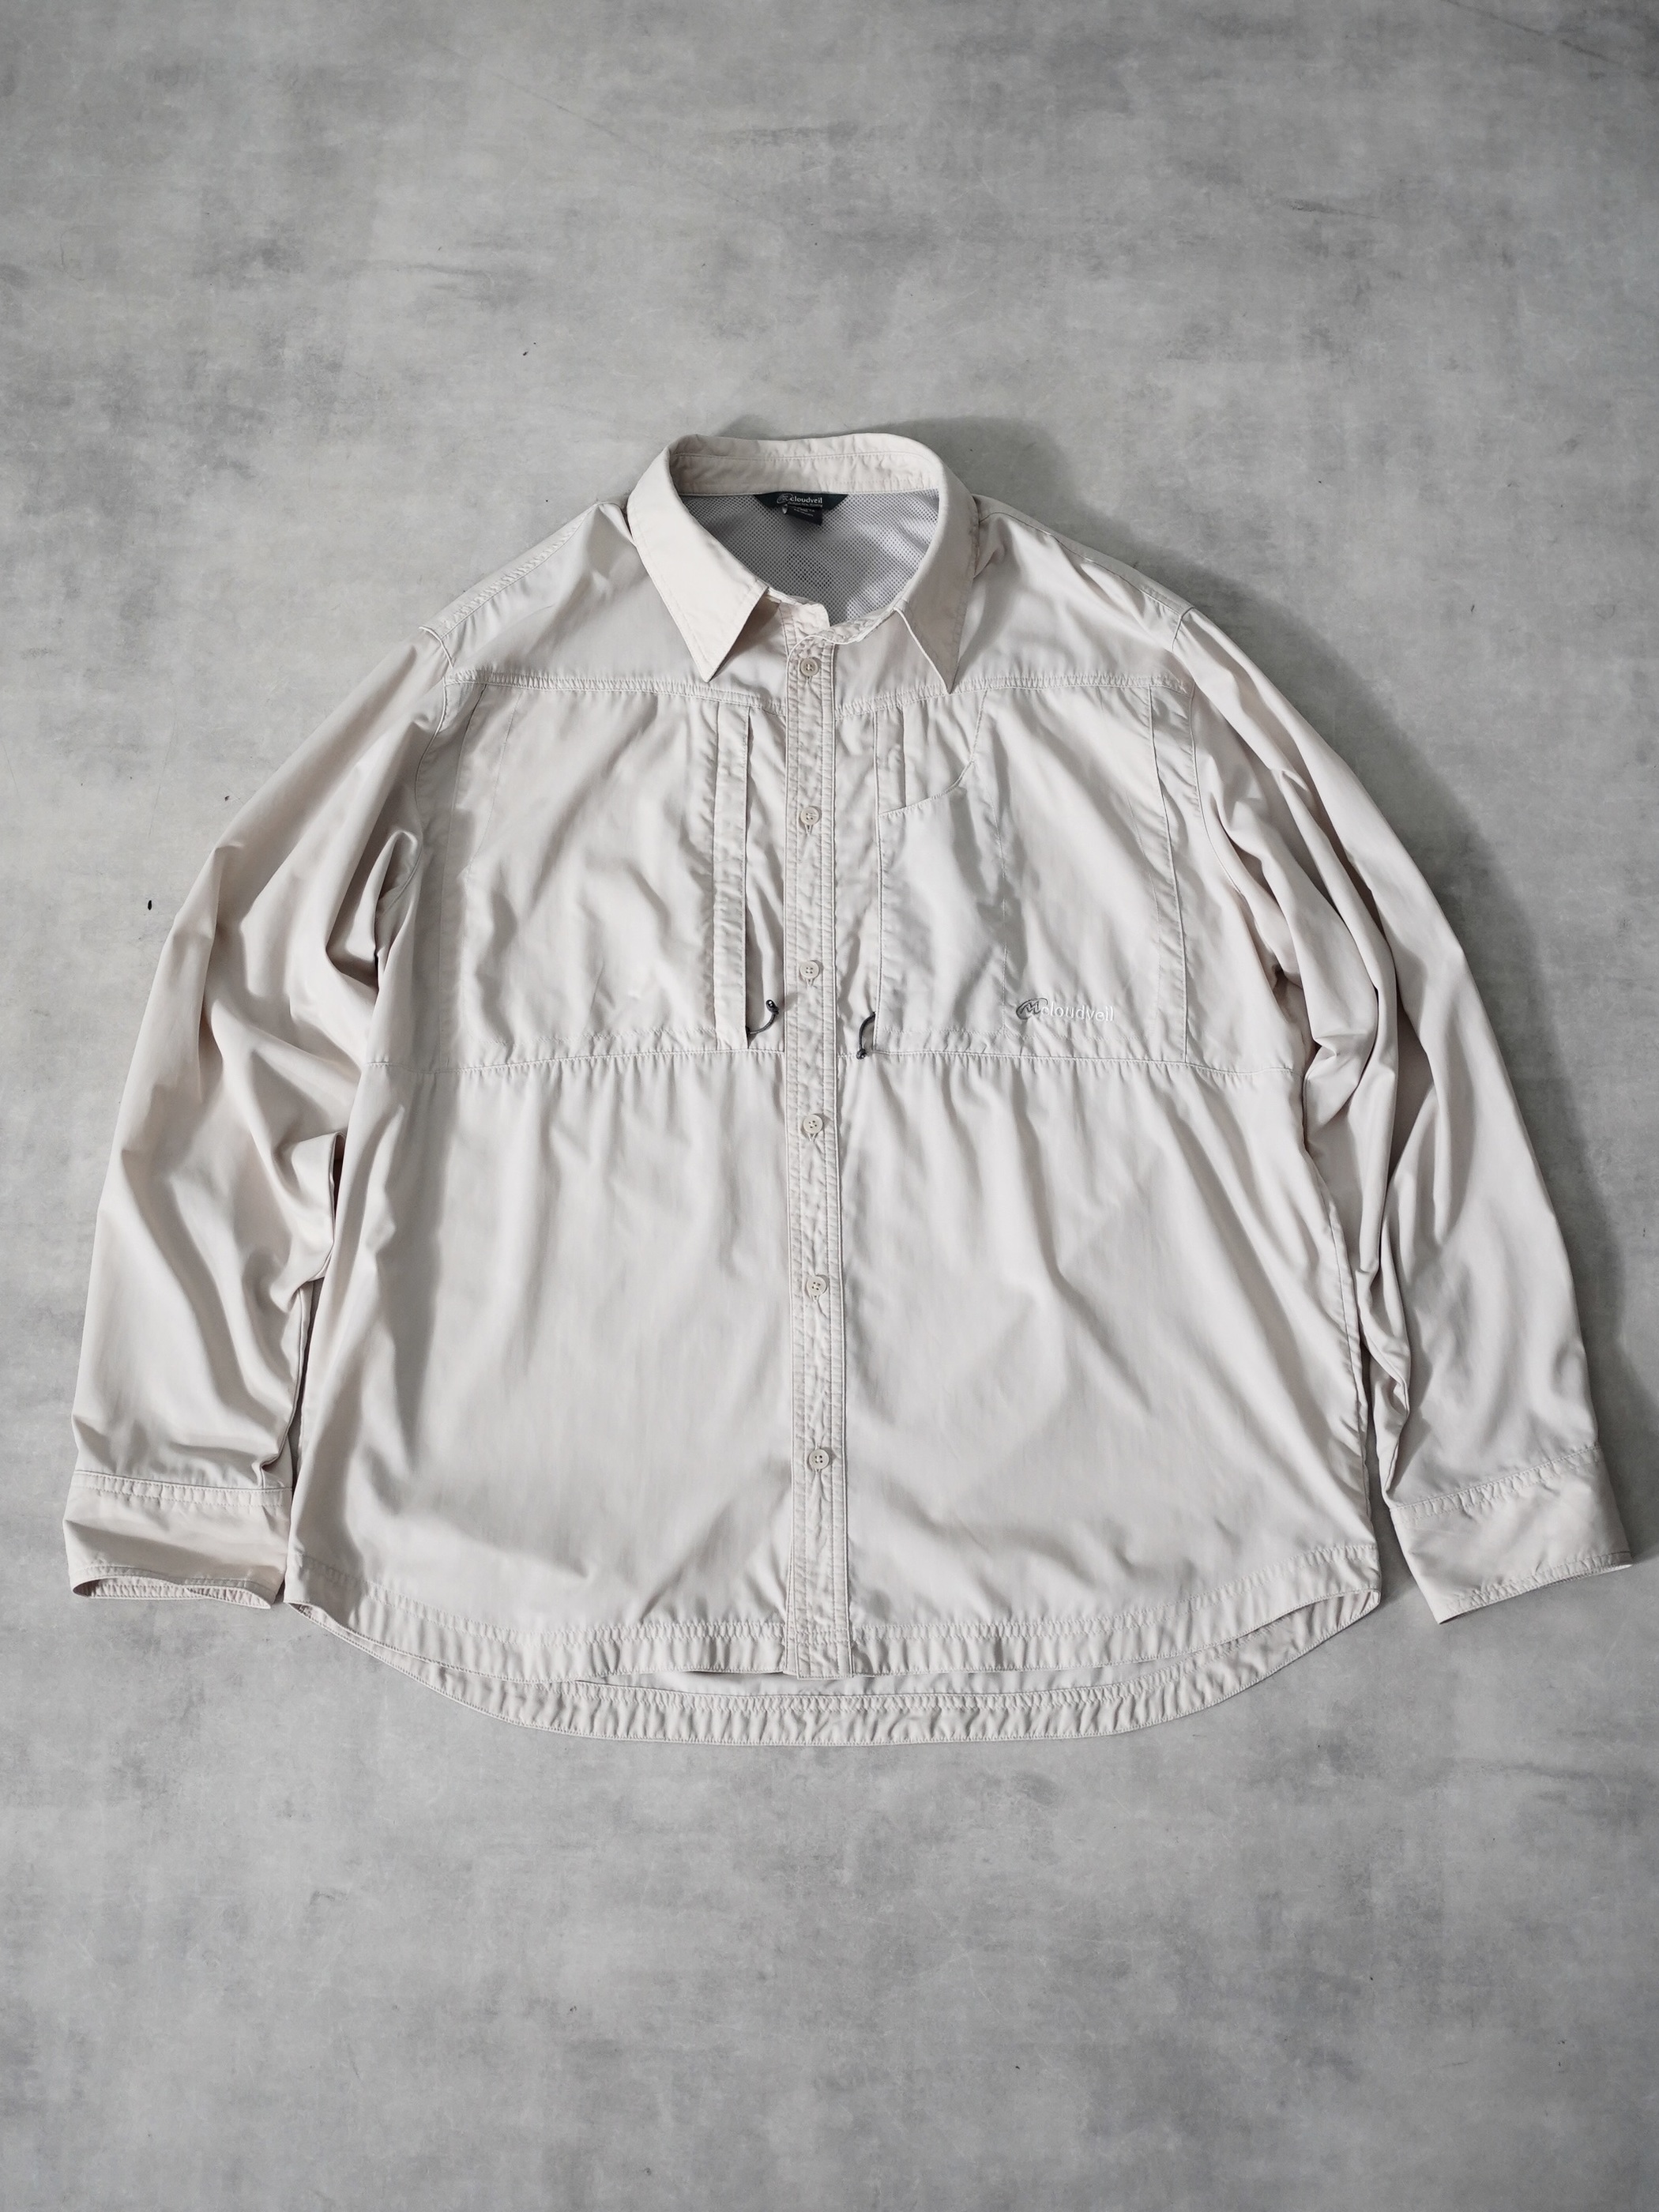 Cloudveil zip pocket soft shell outdoor shirts